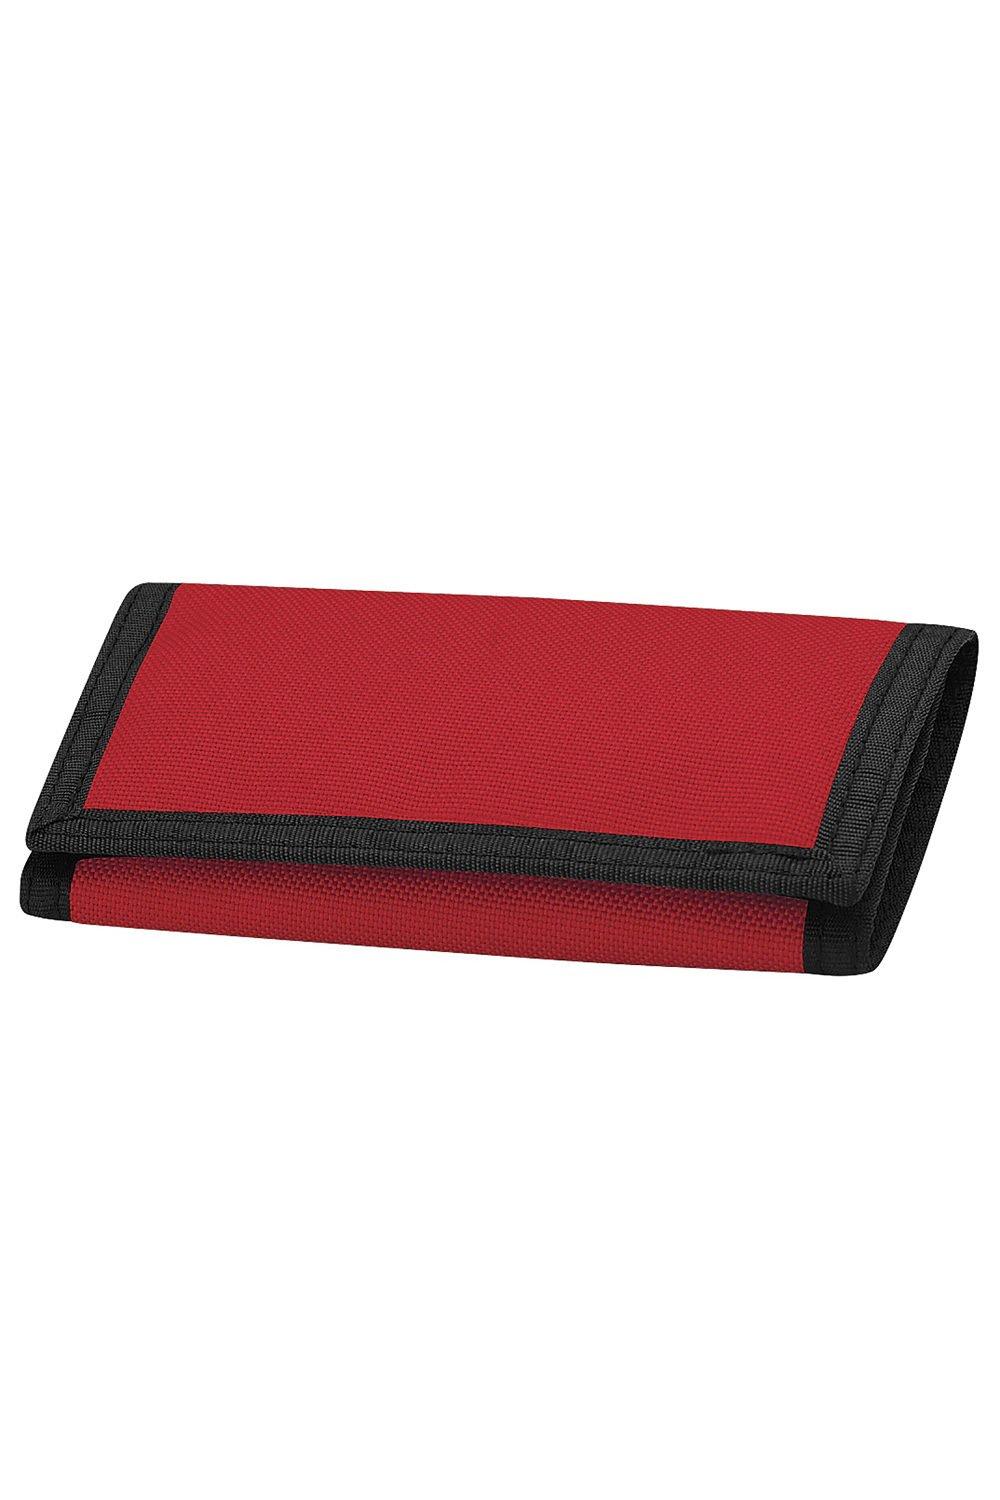 Кошелек Потрошитель Bagbase, красный переноска прямоугольная 13 5 х 9 3 х 10 см черная